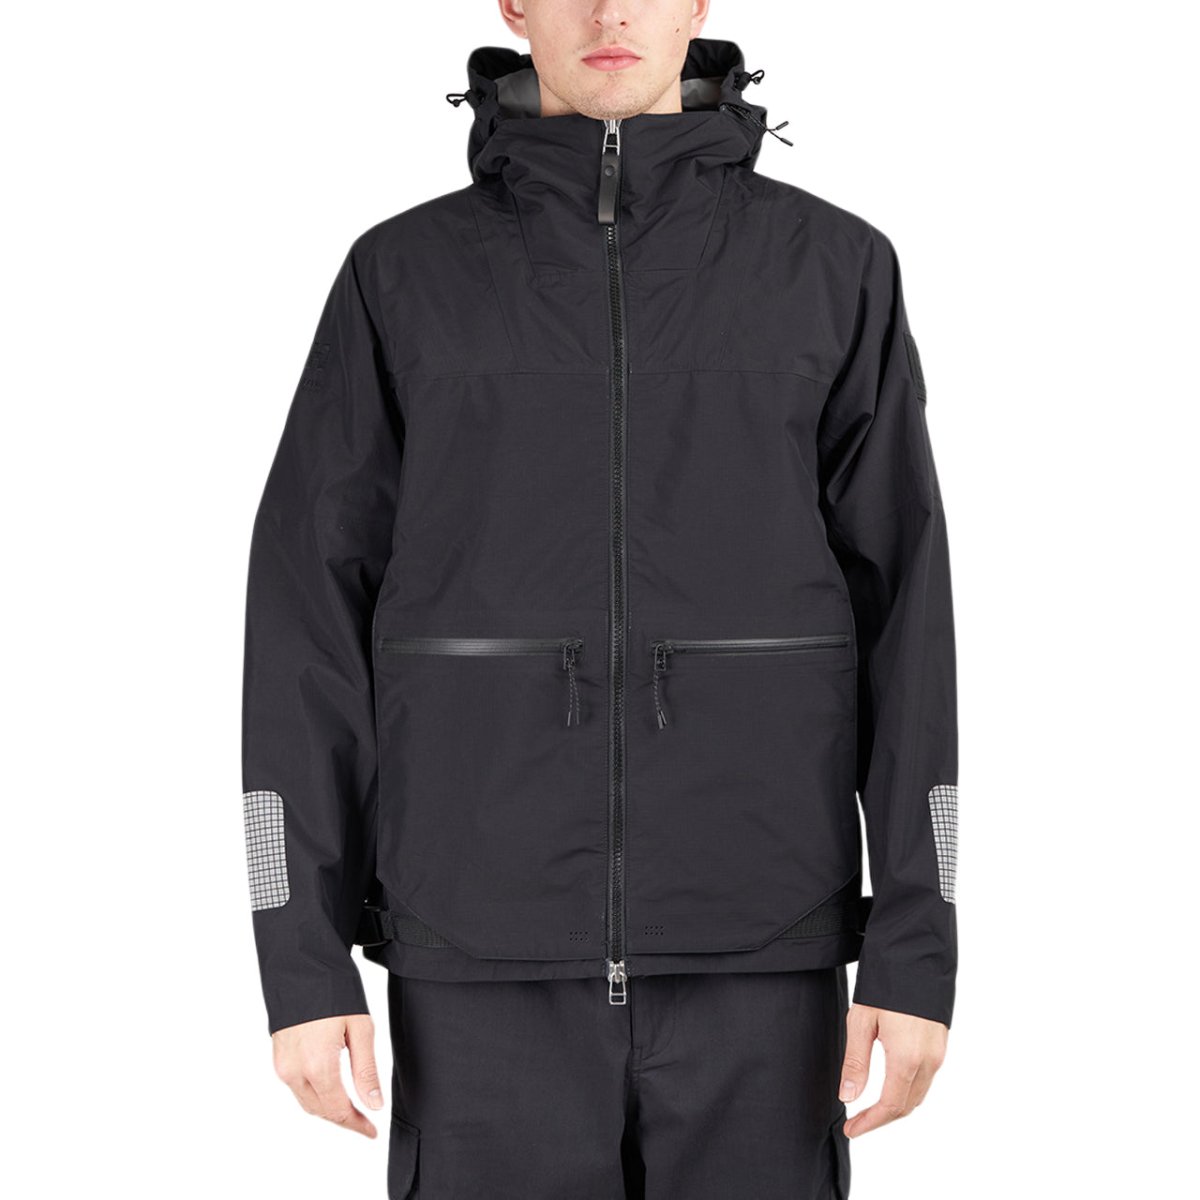 Vermindering Dalset voor de hand liggend Helly Hansen ARC Reversible Jacket (Black)-53671-990 – Allike Store